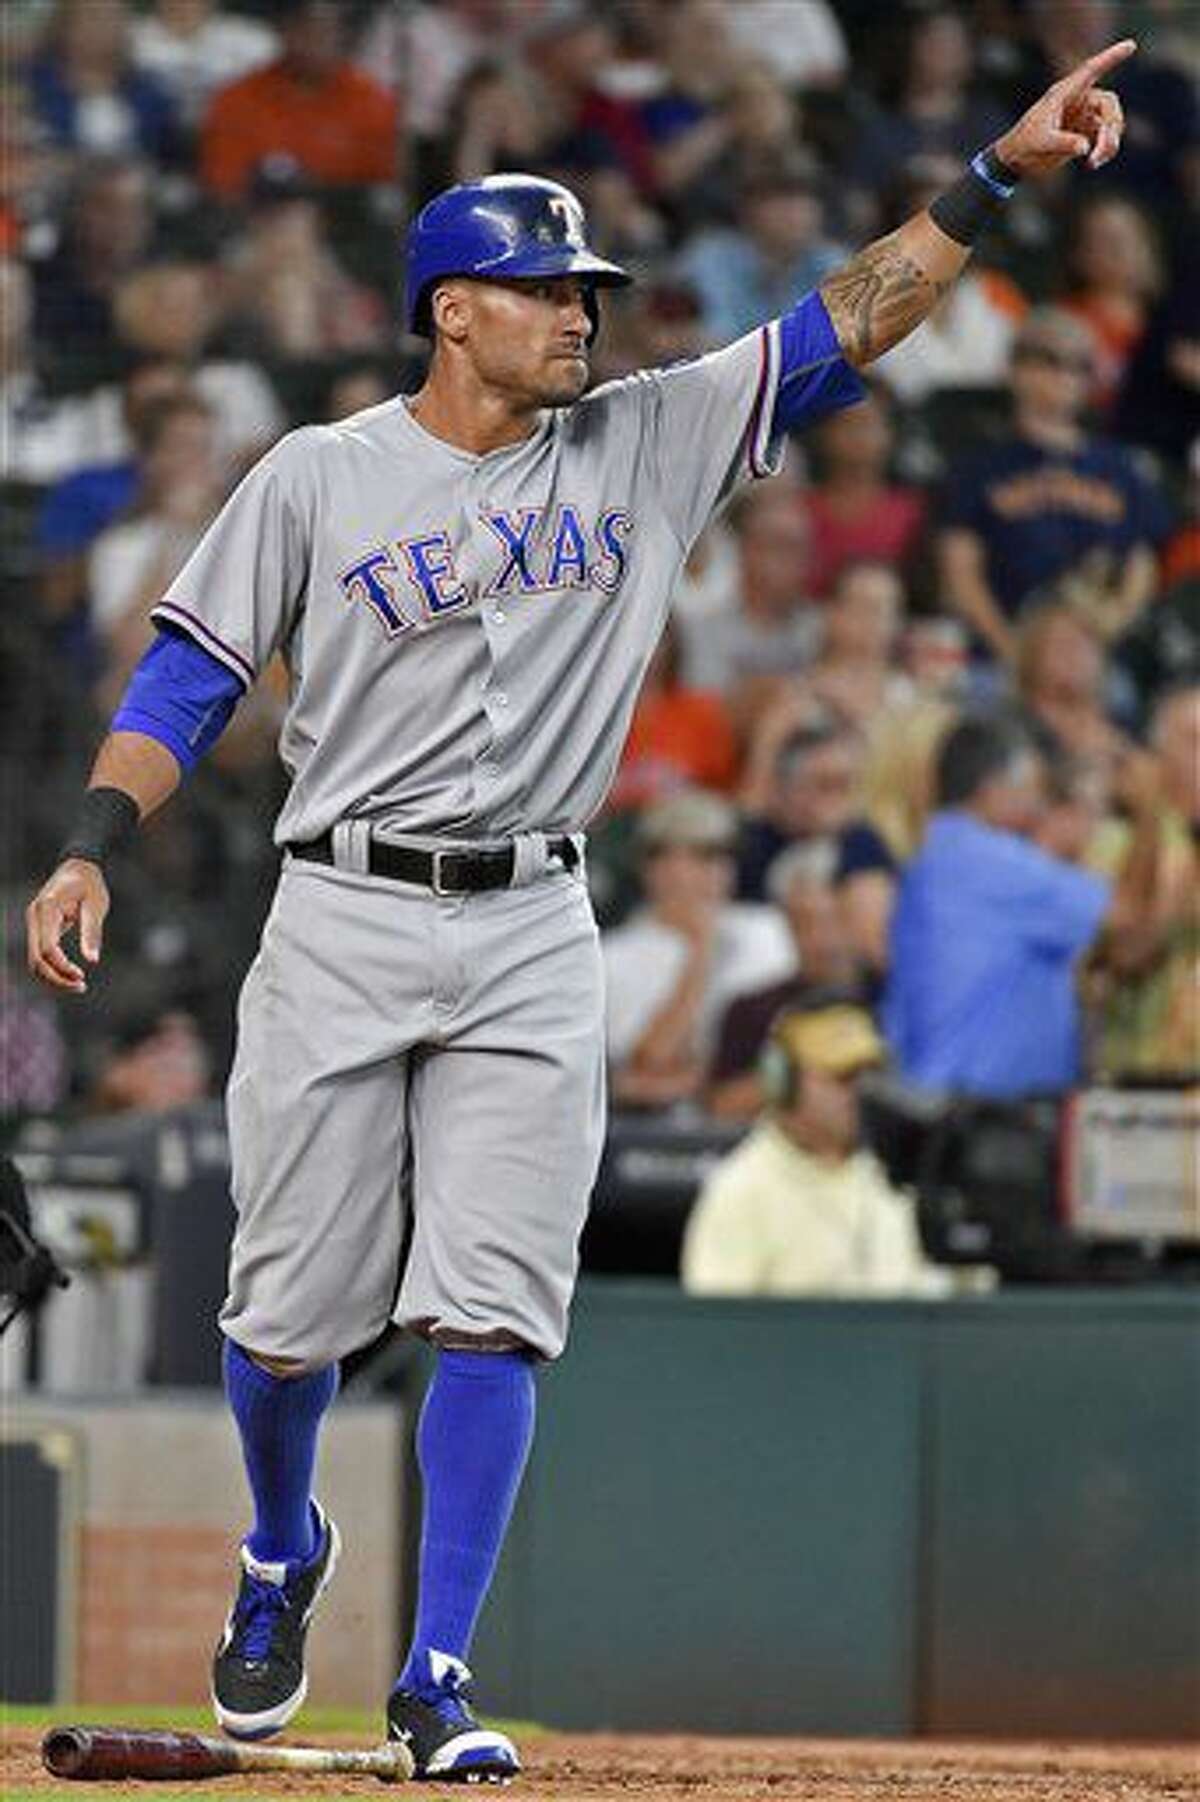 Ian Desmond de los Rangers de Texas tras anotar una carrera ante los Astros de Houston, el domingo 7 de agosto de de 2016. (AP Foto/Eric Christian Smith)